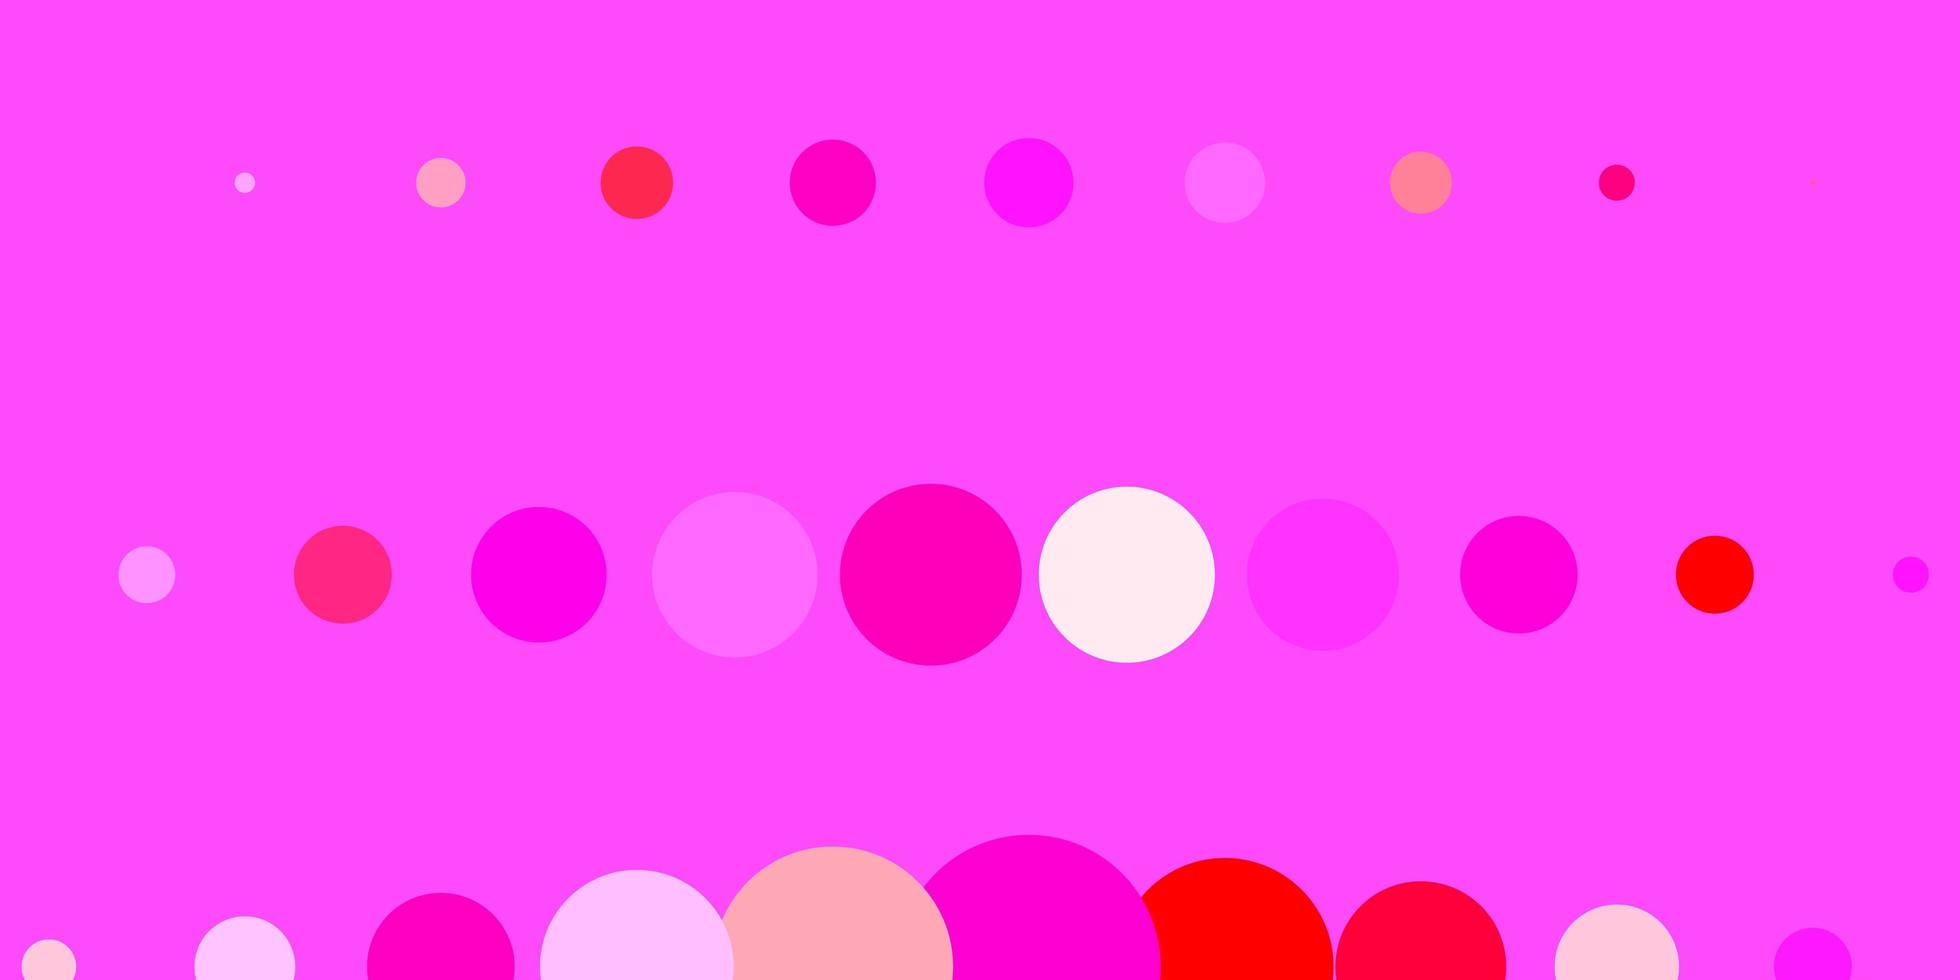 layout vettoriale rosa scuro, giallo con forme circolari. illustrazione con set di brillanti sfere astratte colorate. design per i tuoi annunci pubblicitari.